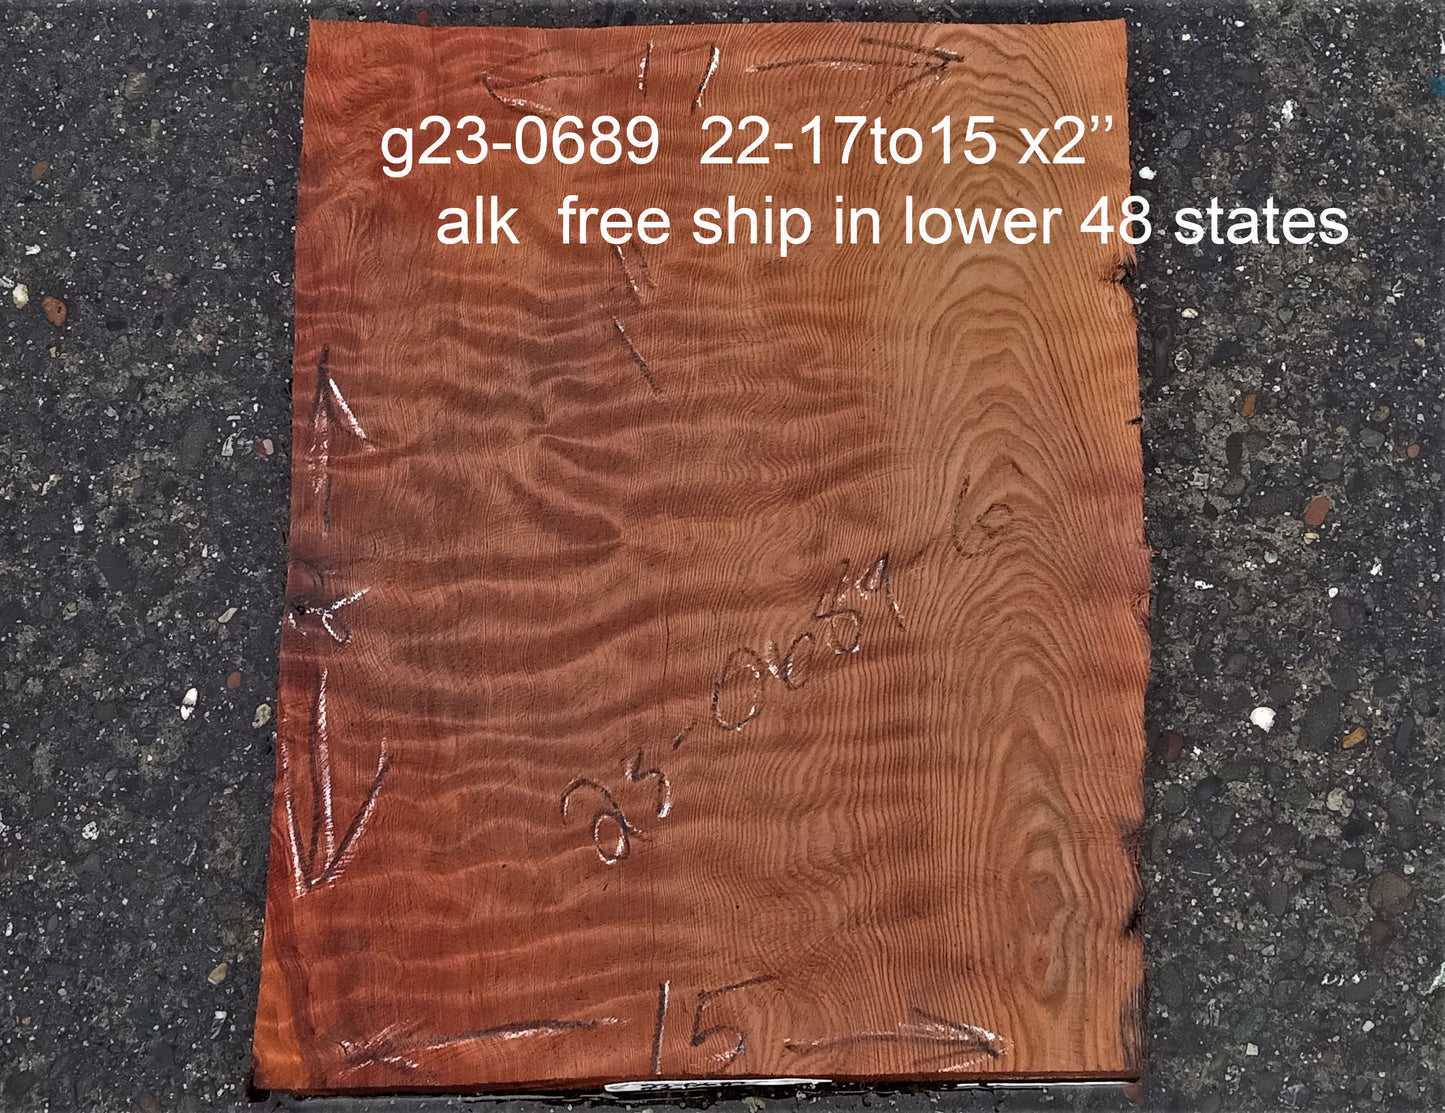 Quilted redwood | guitar billet | wood turning | DIY crafts | g23-0689